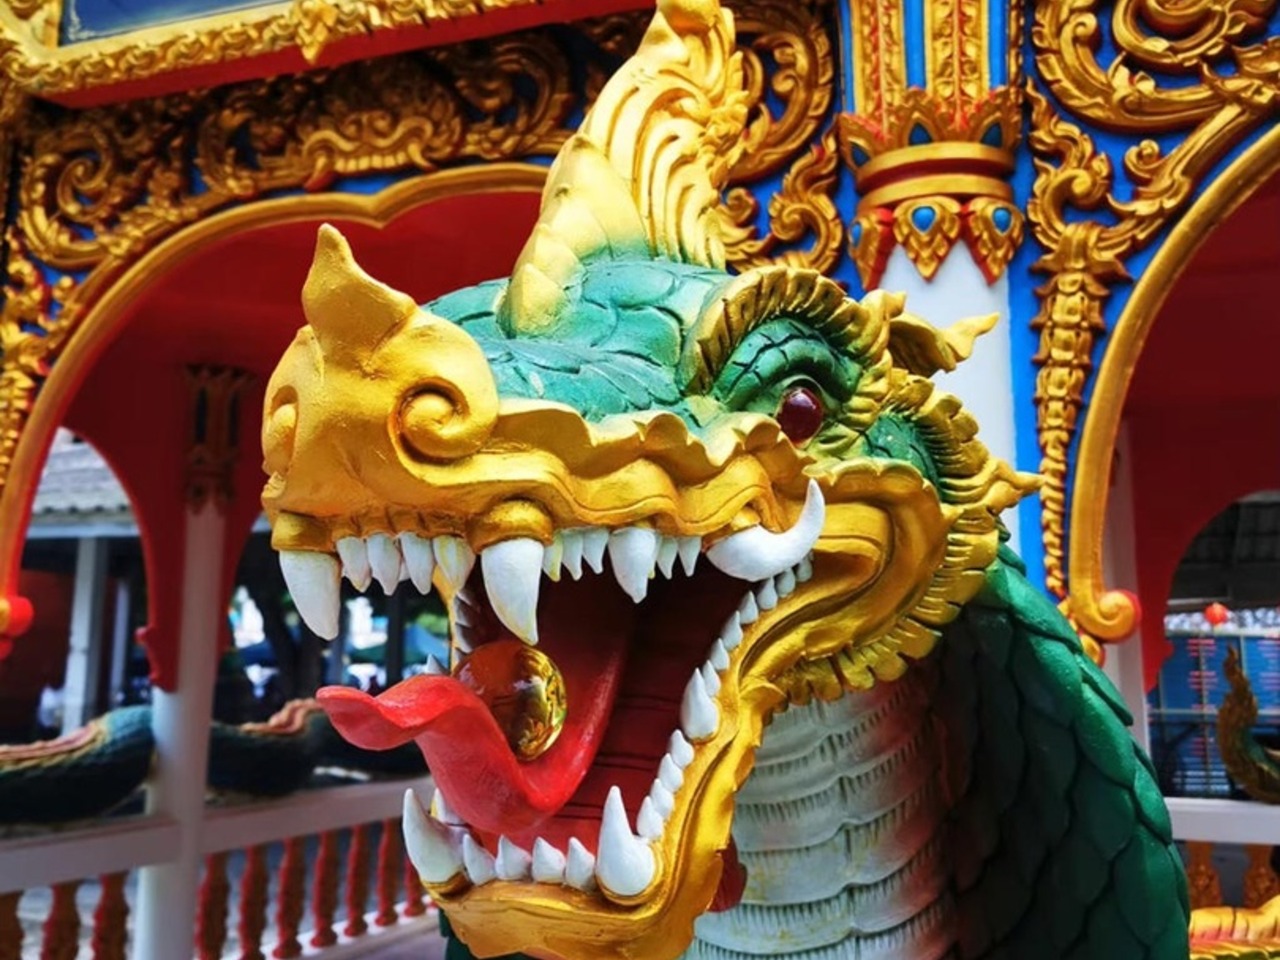 В “Логово дракона” из Паттайи | Цена 90$, отзывы, описание экскурсии